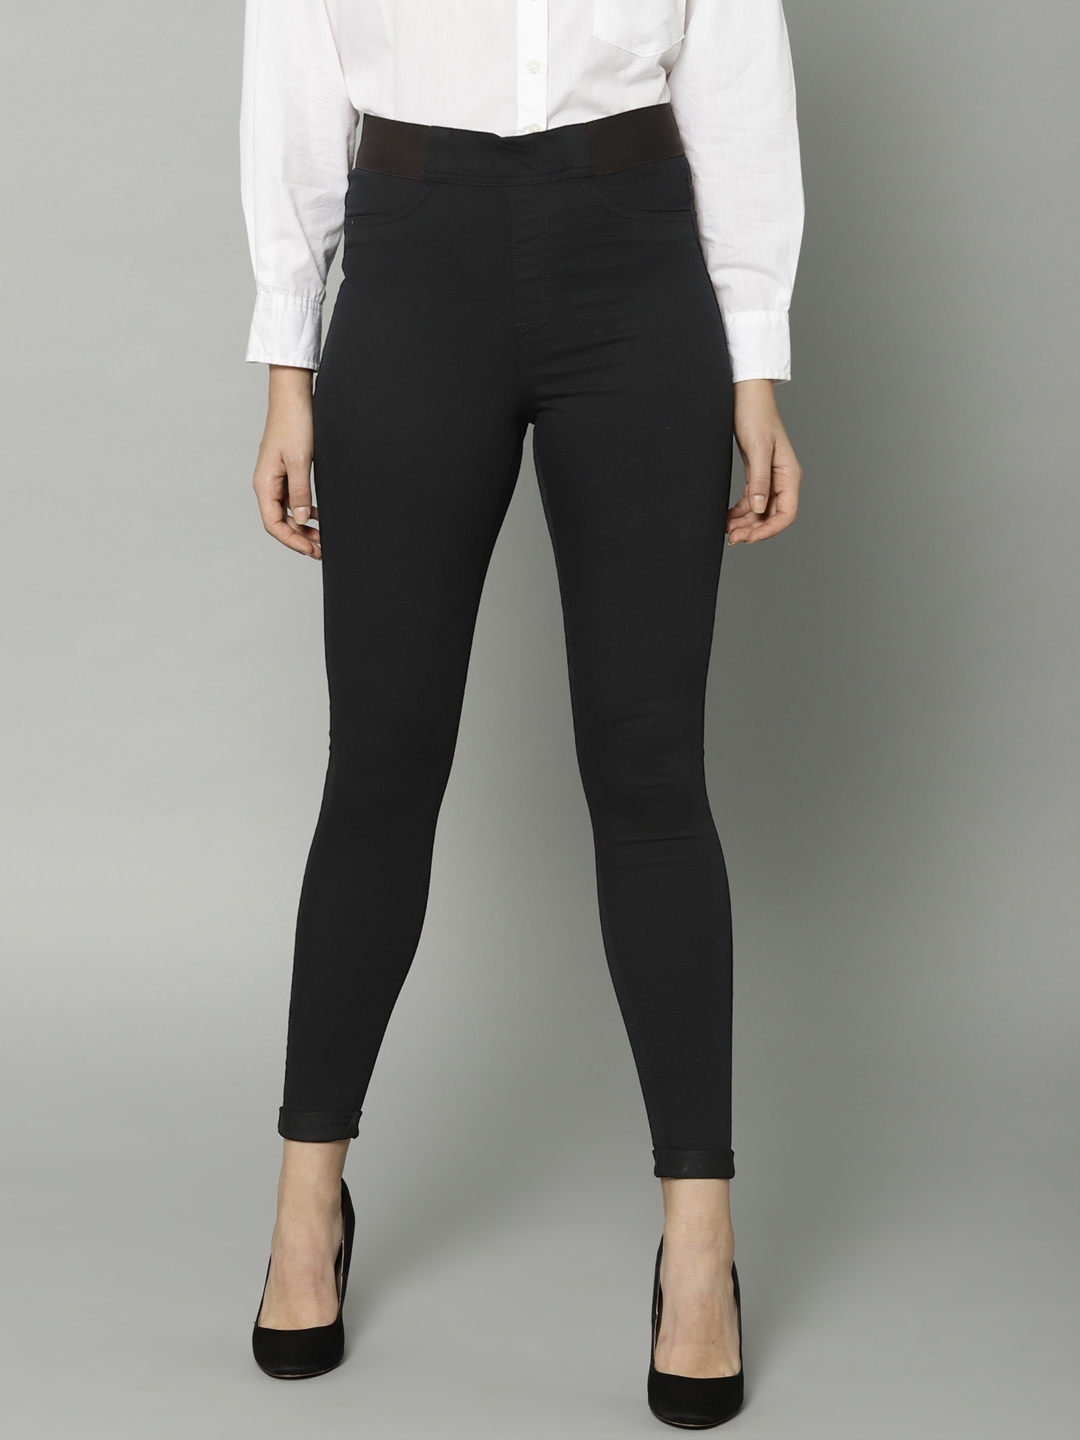 Marks & Spencer Women Black Solid Super Skinny Fit Jeggings